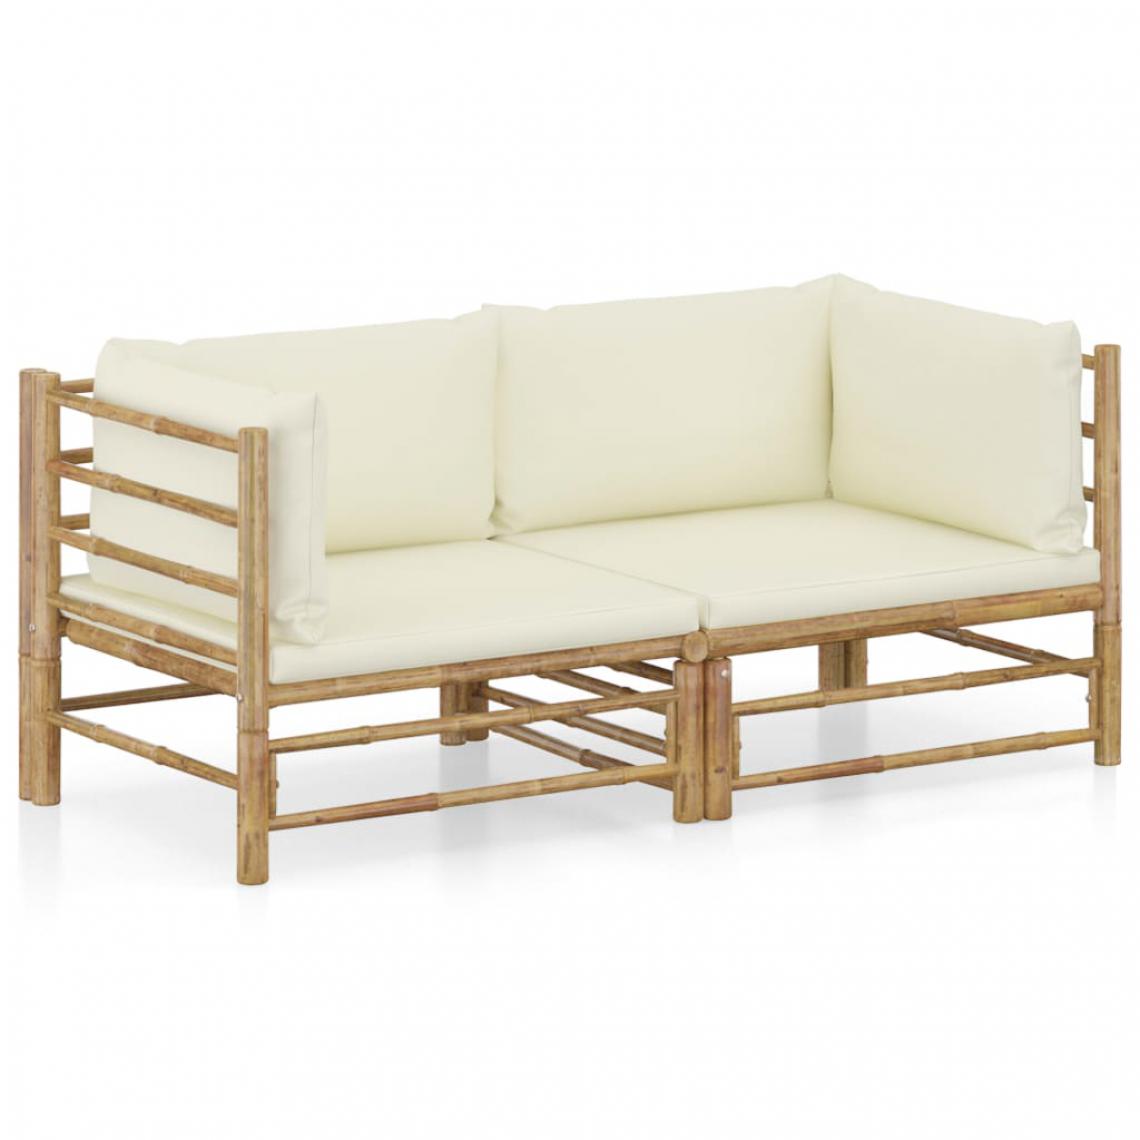 Chunhelife - Chunhelife Salon de jardin 2 pcs avec coussins blanc crème Bambou - Ensembles canapés et fauteuils